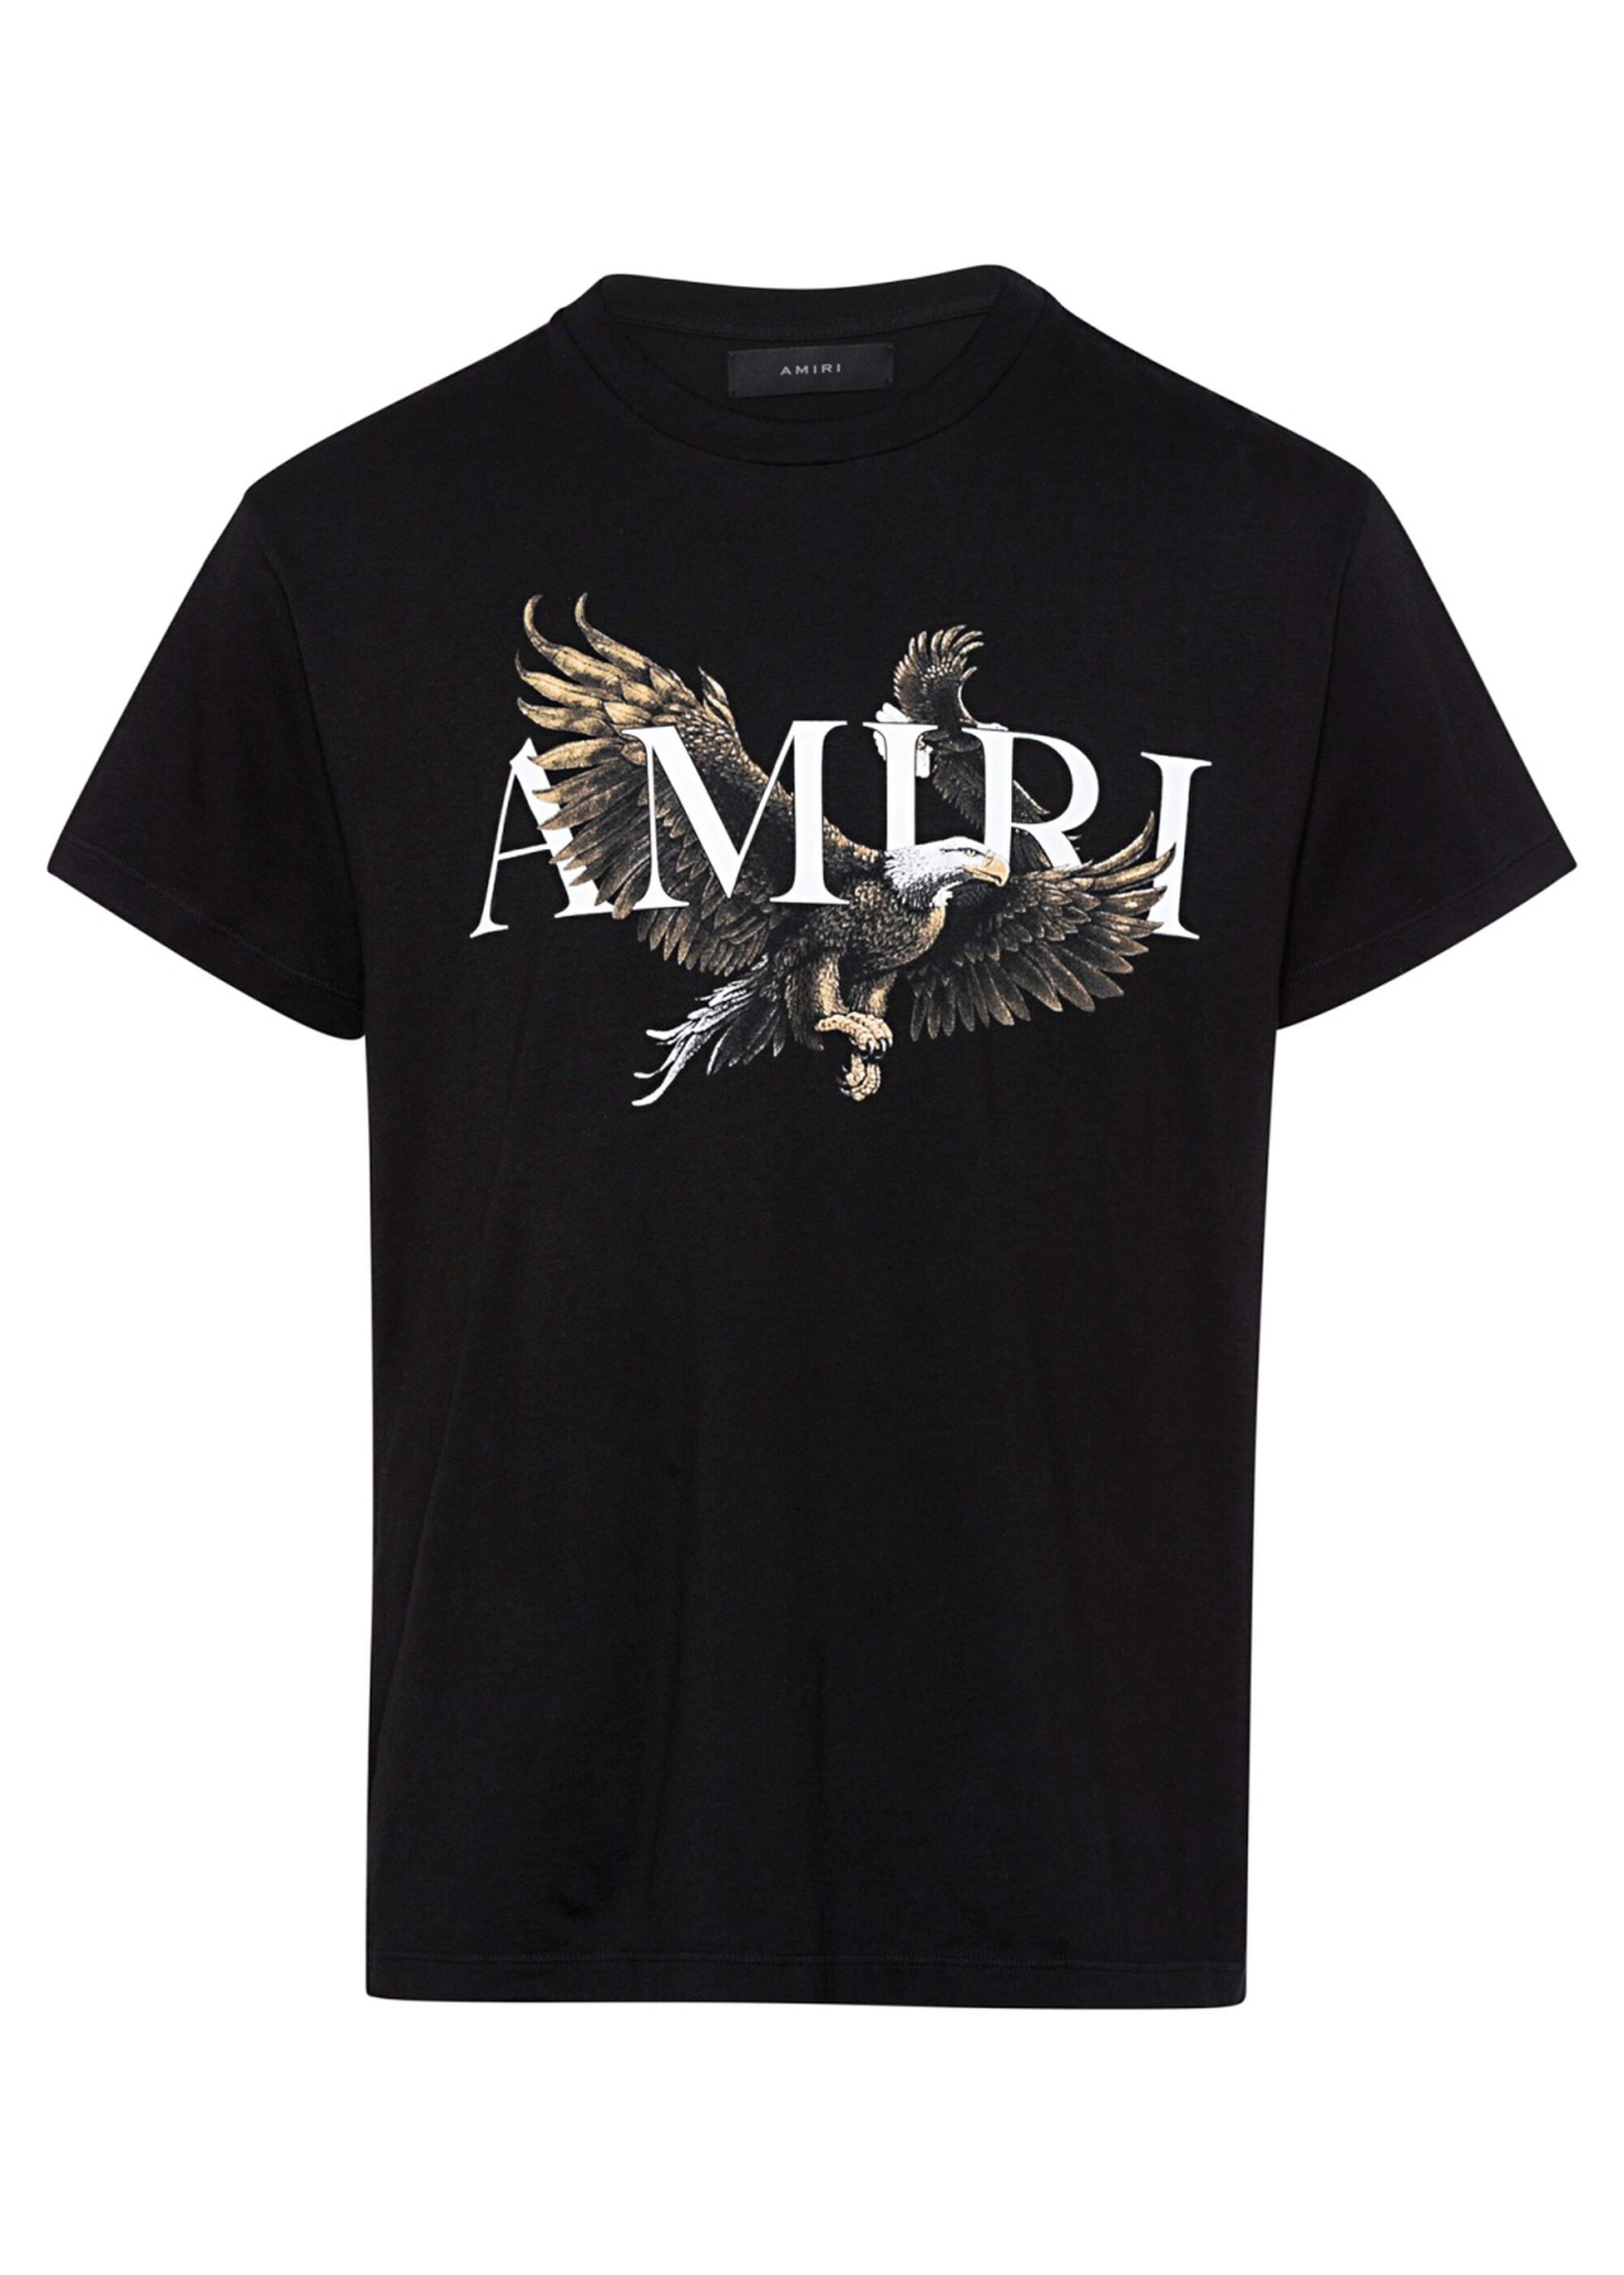 AMIRI AMIRI EAGLE TEE - T-Shirts | KaDeWe Onlineshop